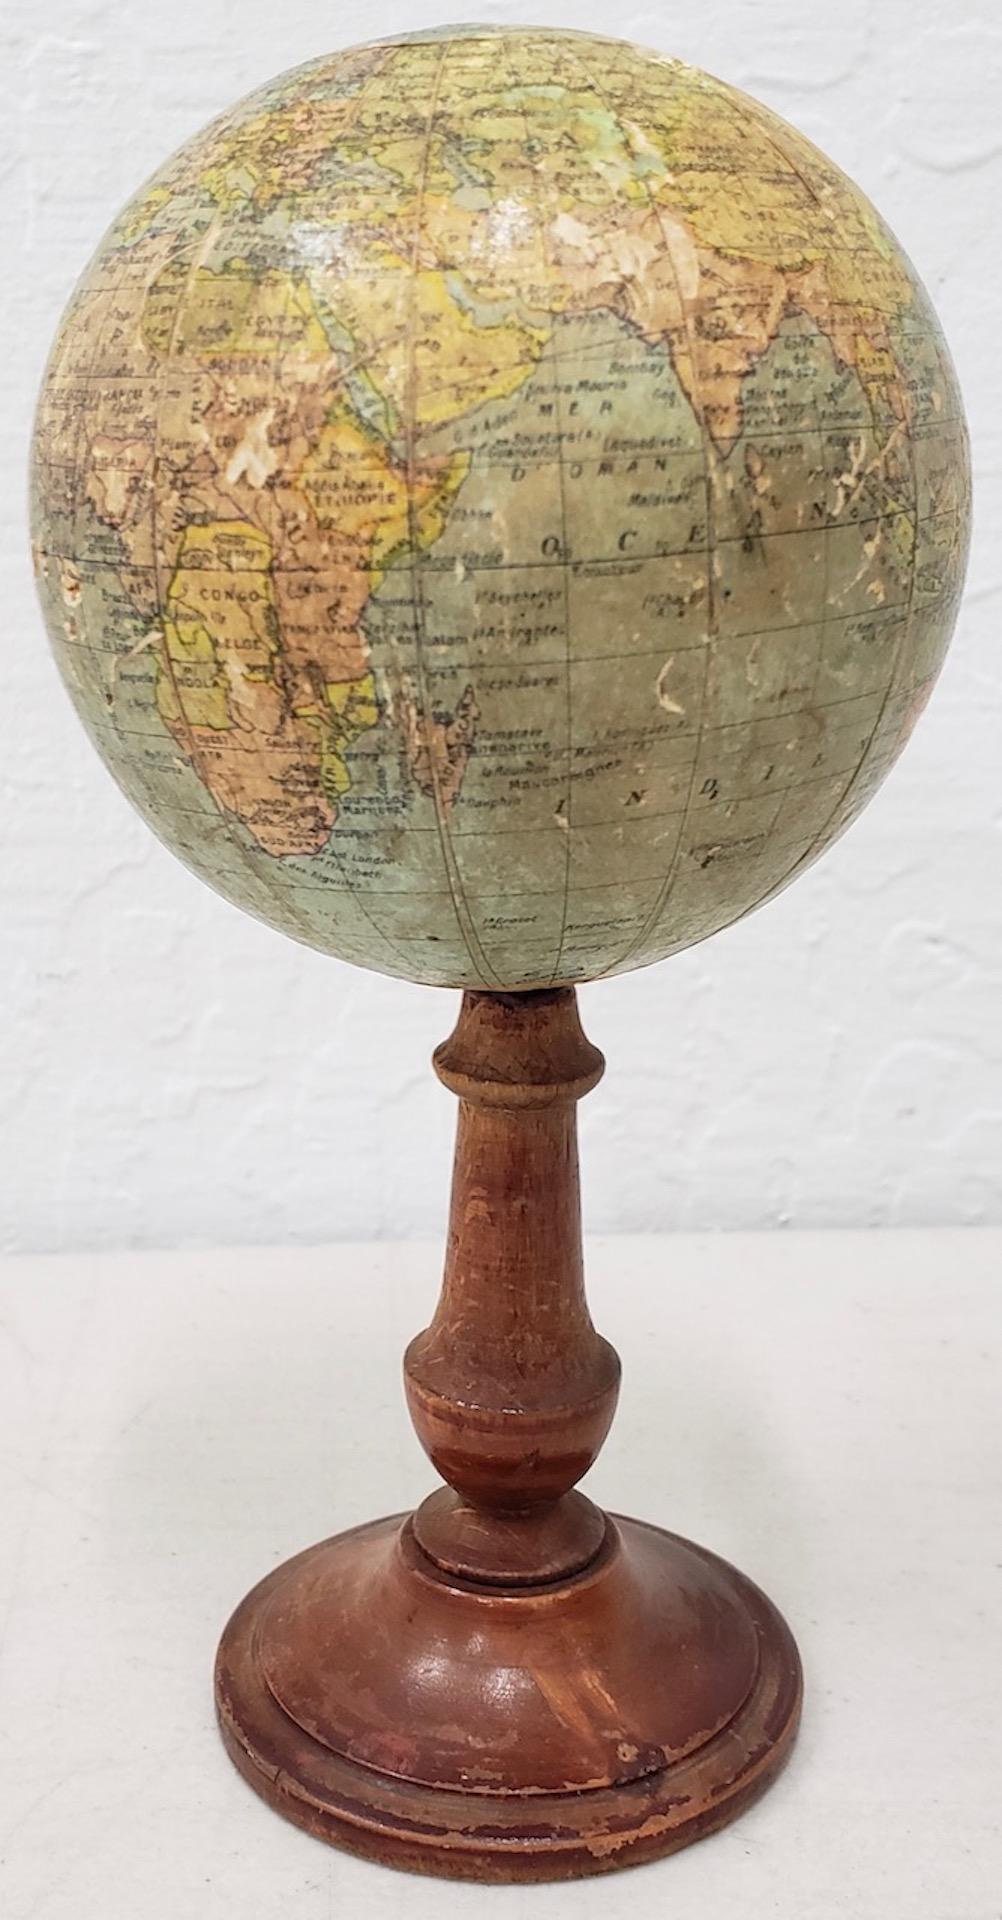 gram of the globe